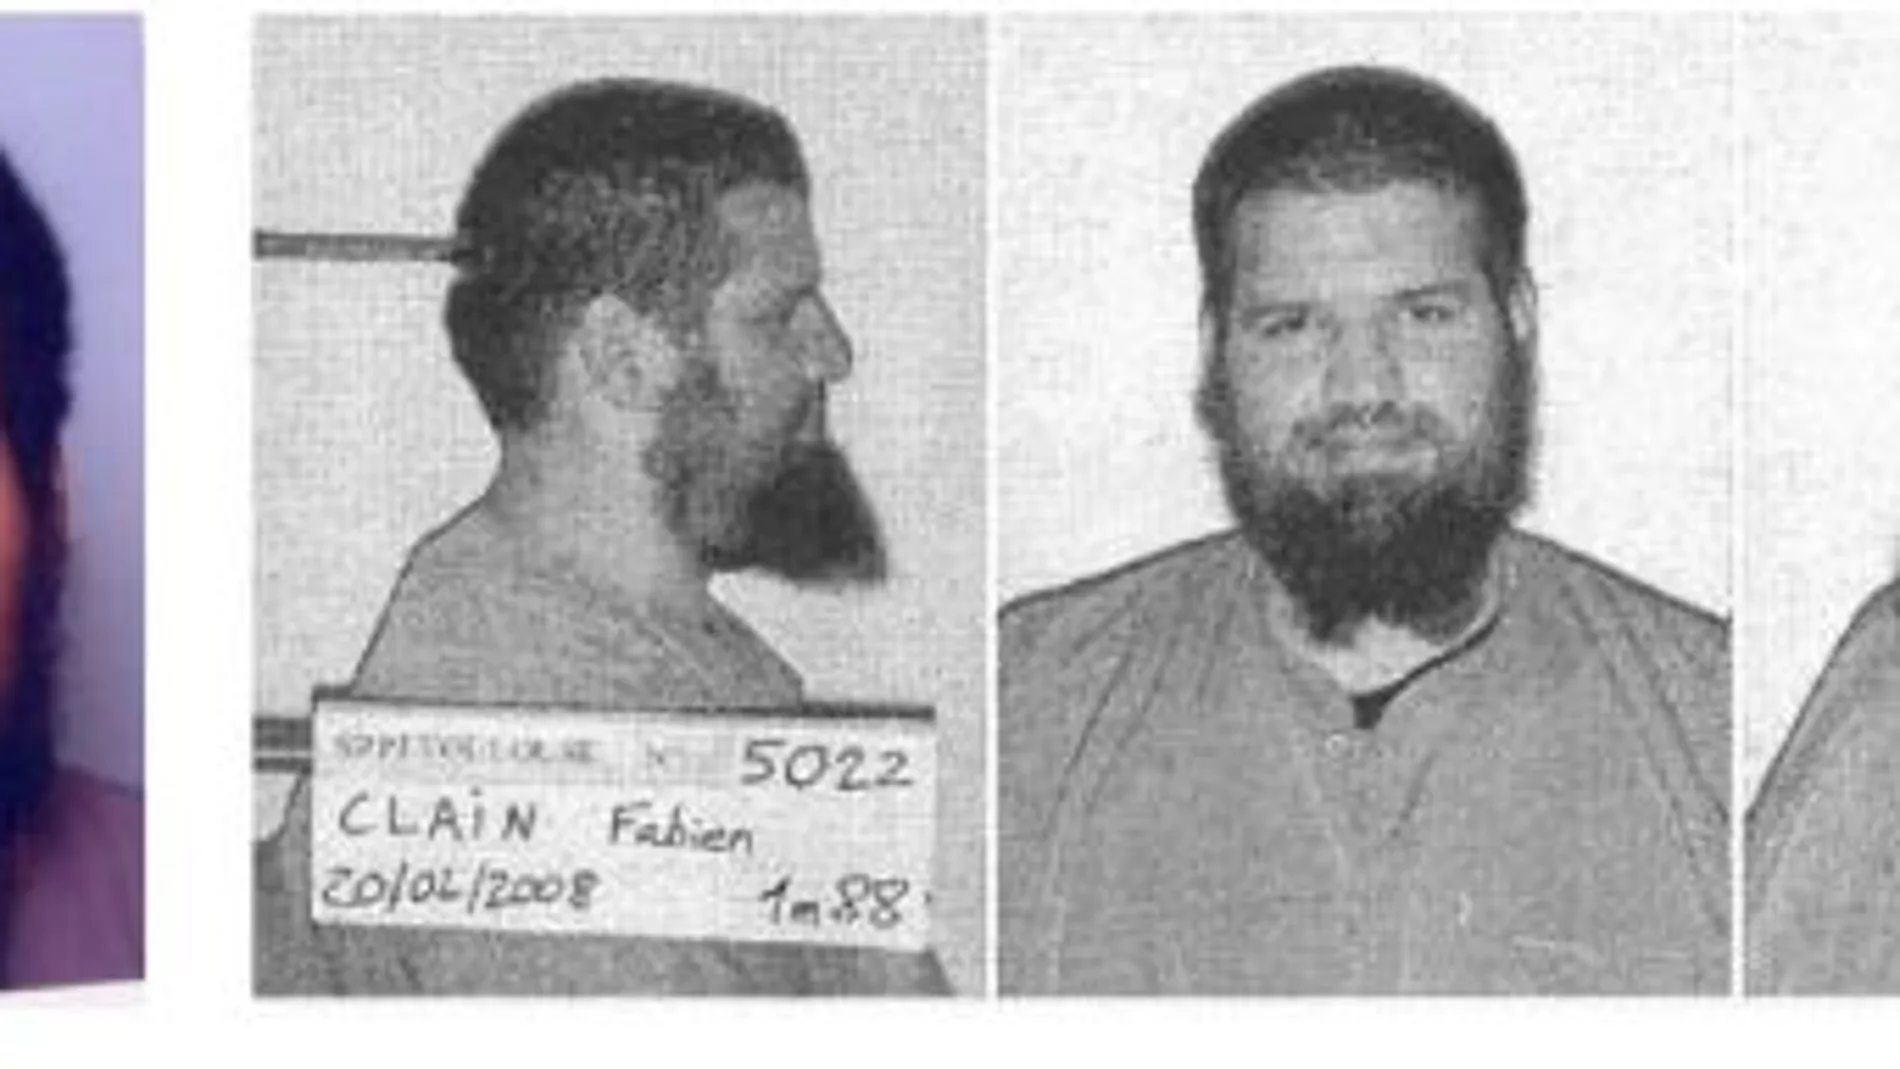 Fabien Clain estaba considerado como “enemigo público” en el país galo